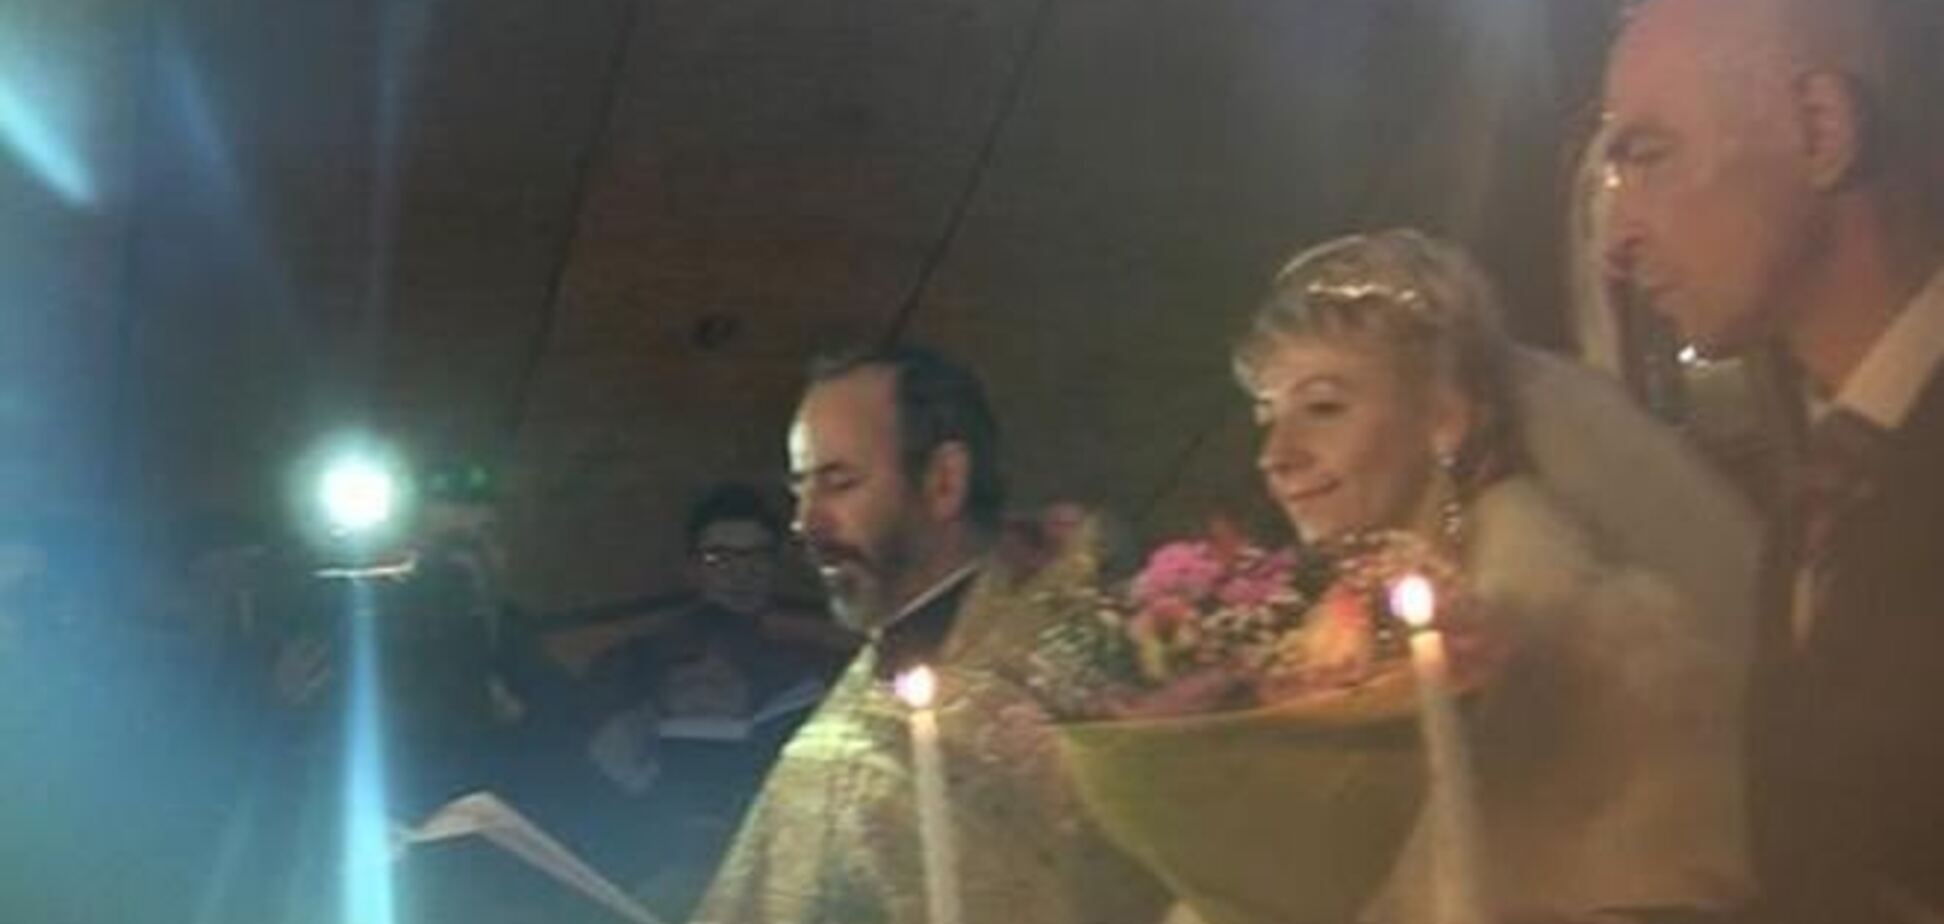 Революционная свадьба: молодожены обвенчались в полевом храме на Евромайдане